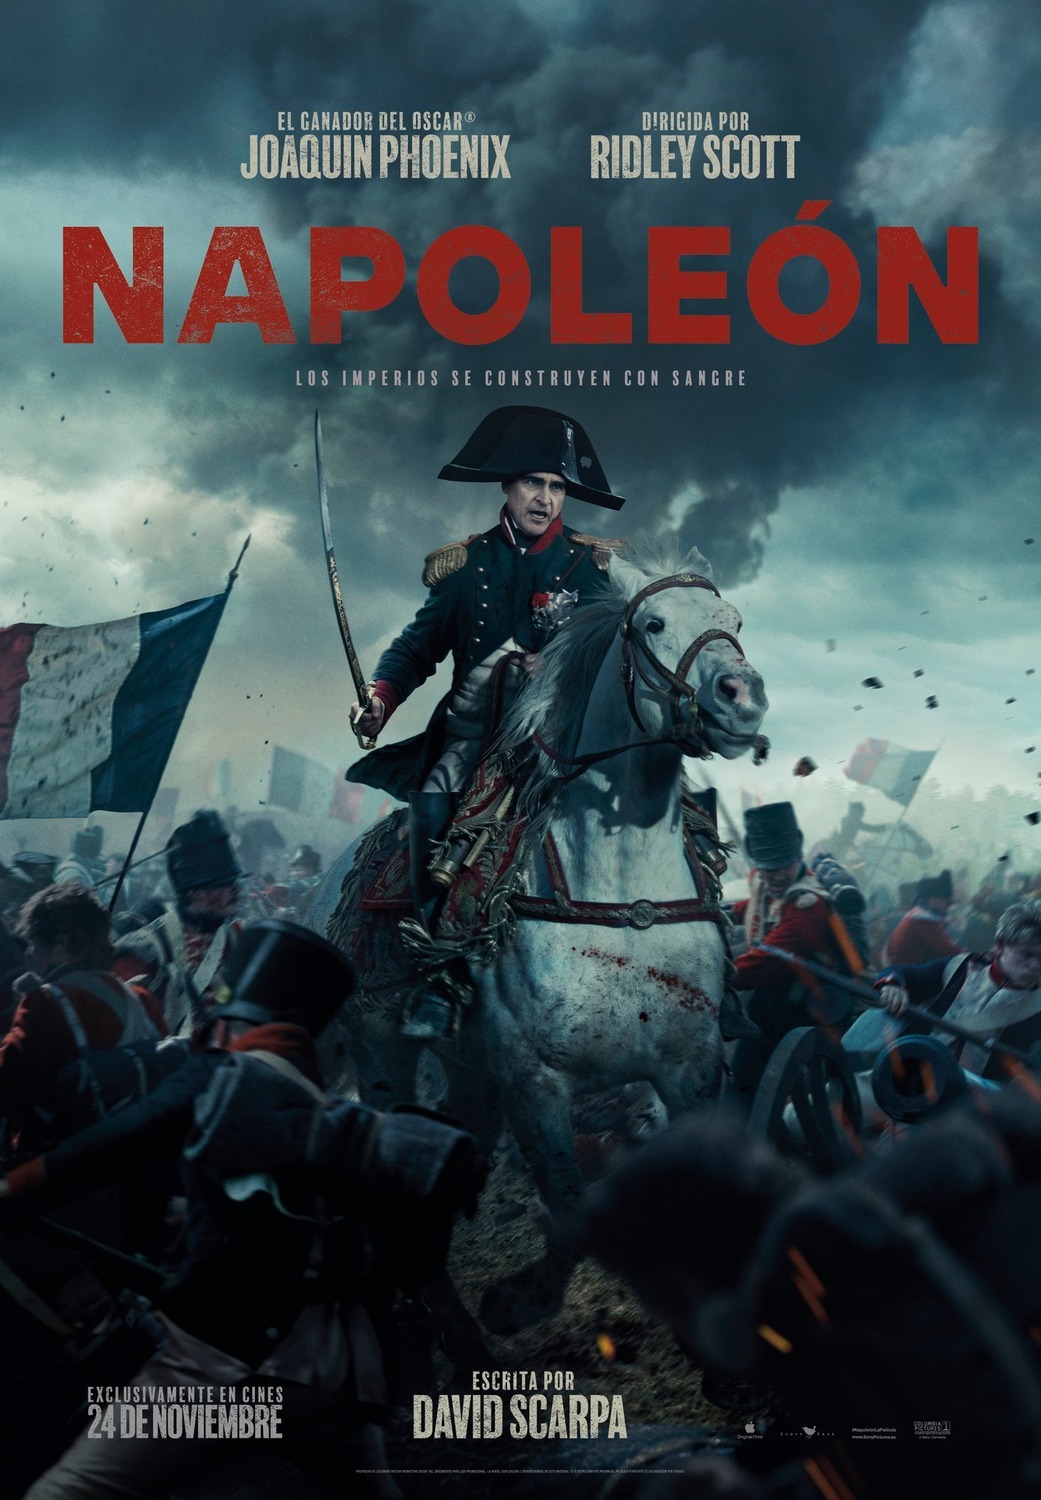 Napoleon (4 of 14) Extra Large Movie Poster Image IMP Awards